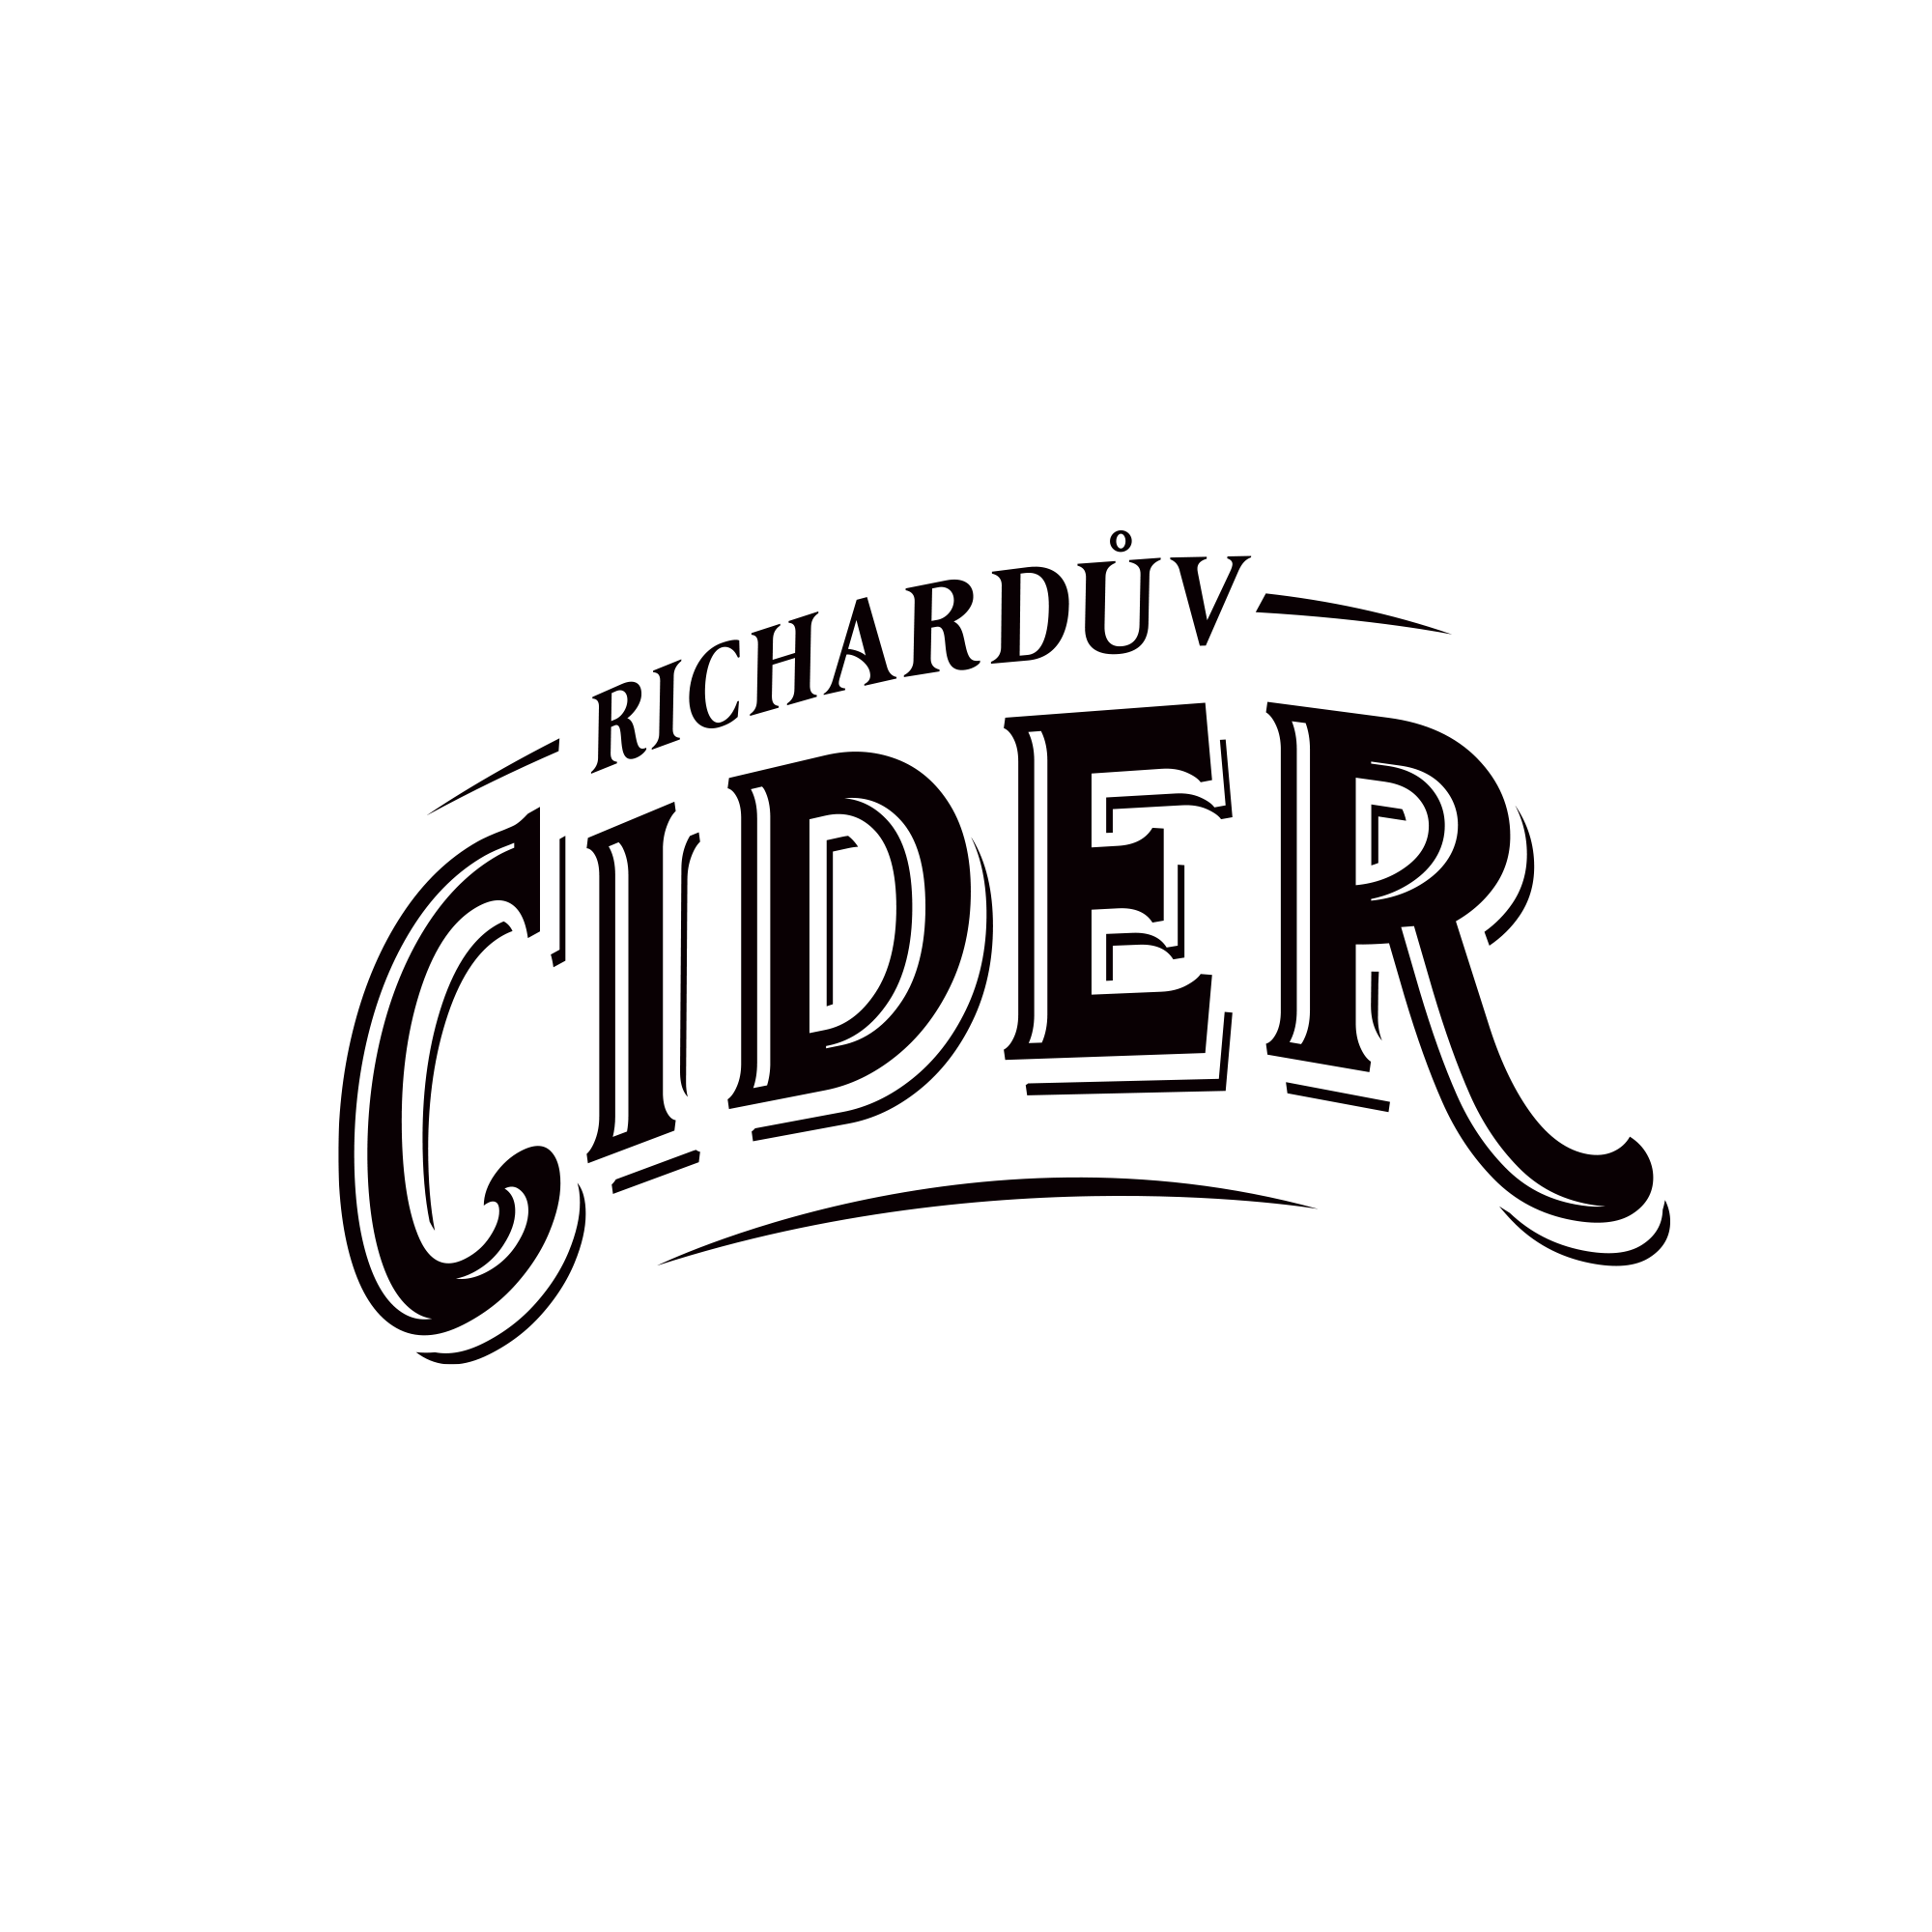 Richardův Cider